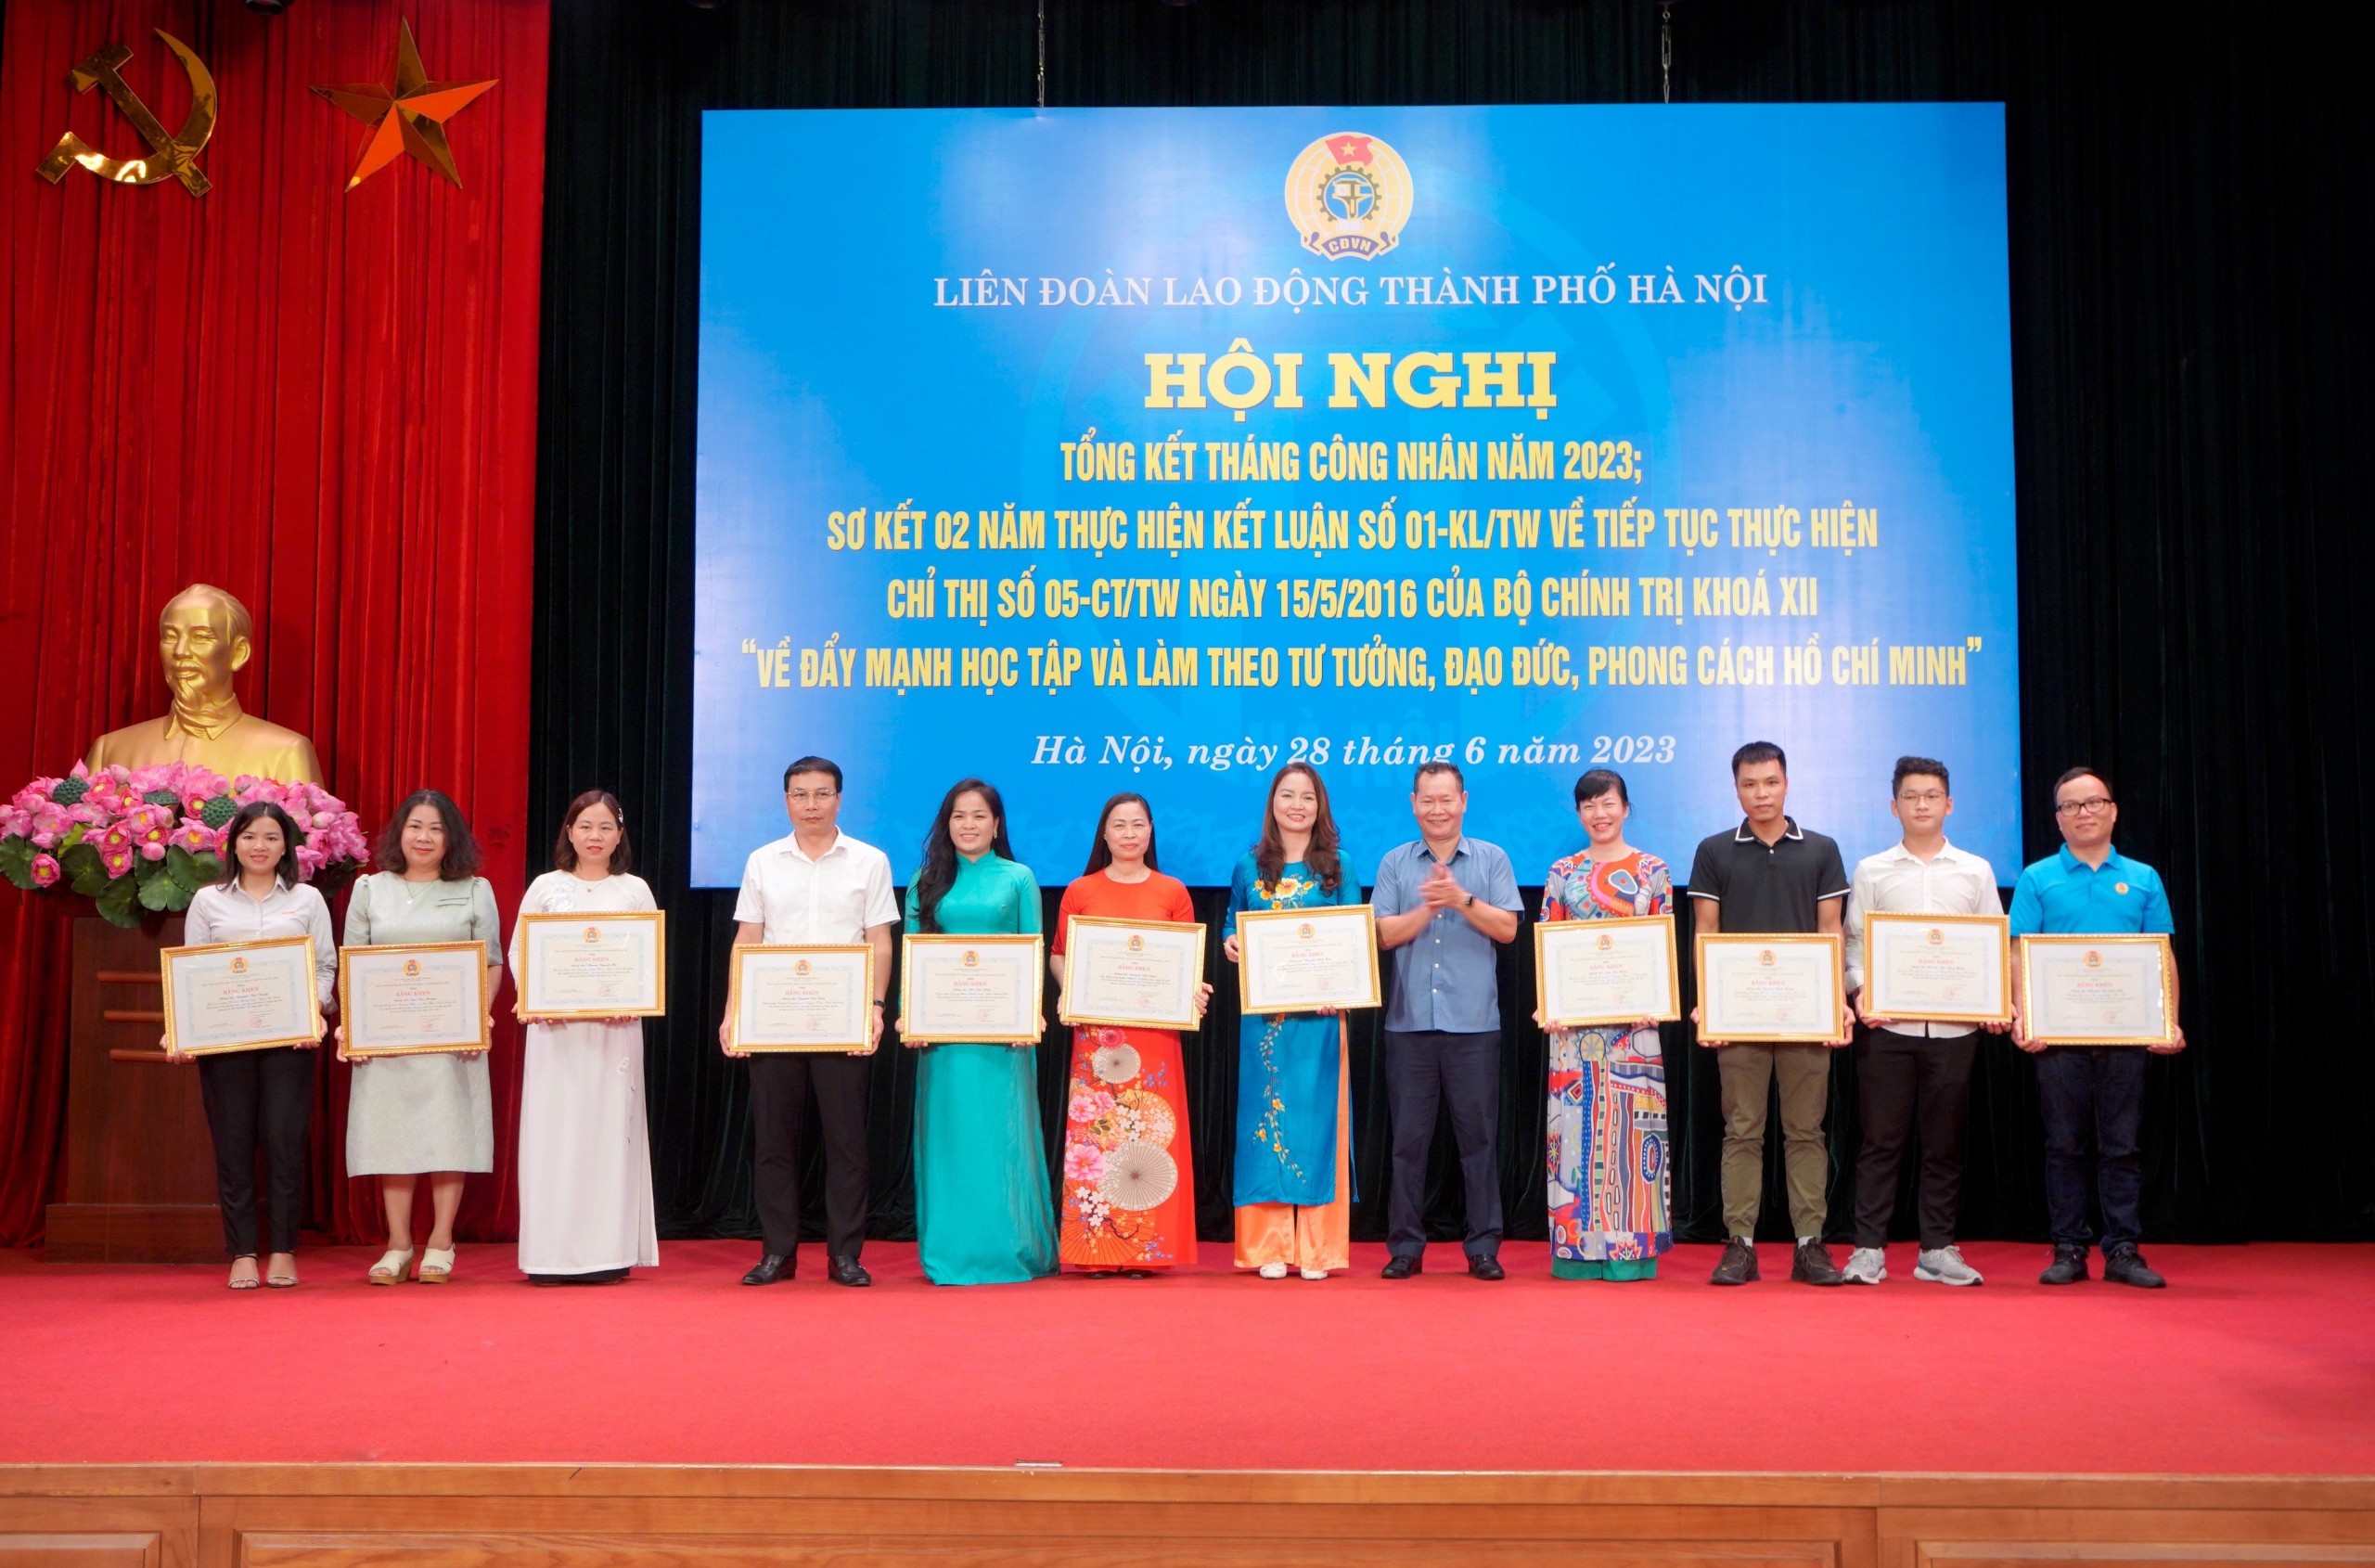 Đồng chí Nguyễn Thị Hiền Lương - Hiệu trưởng trường Tiểu học Vân Canh đón nhận Bằng khen của LĐLĐ thành phố